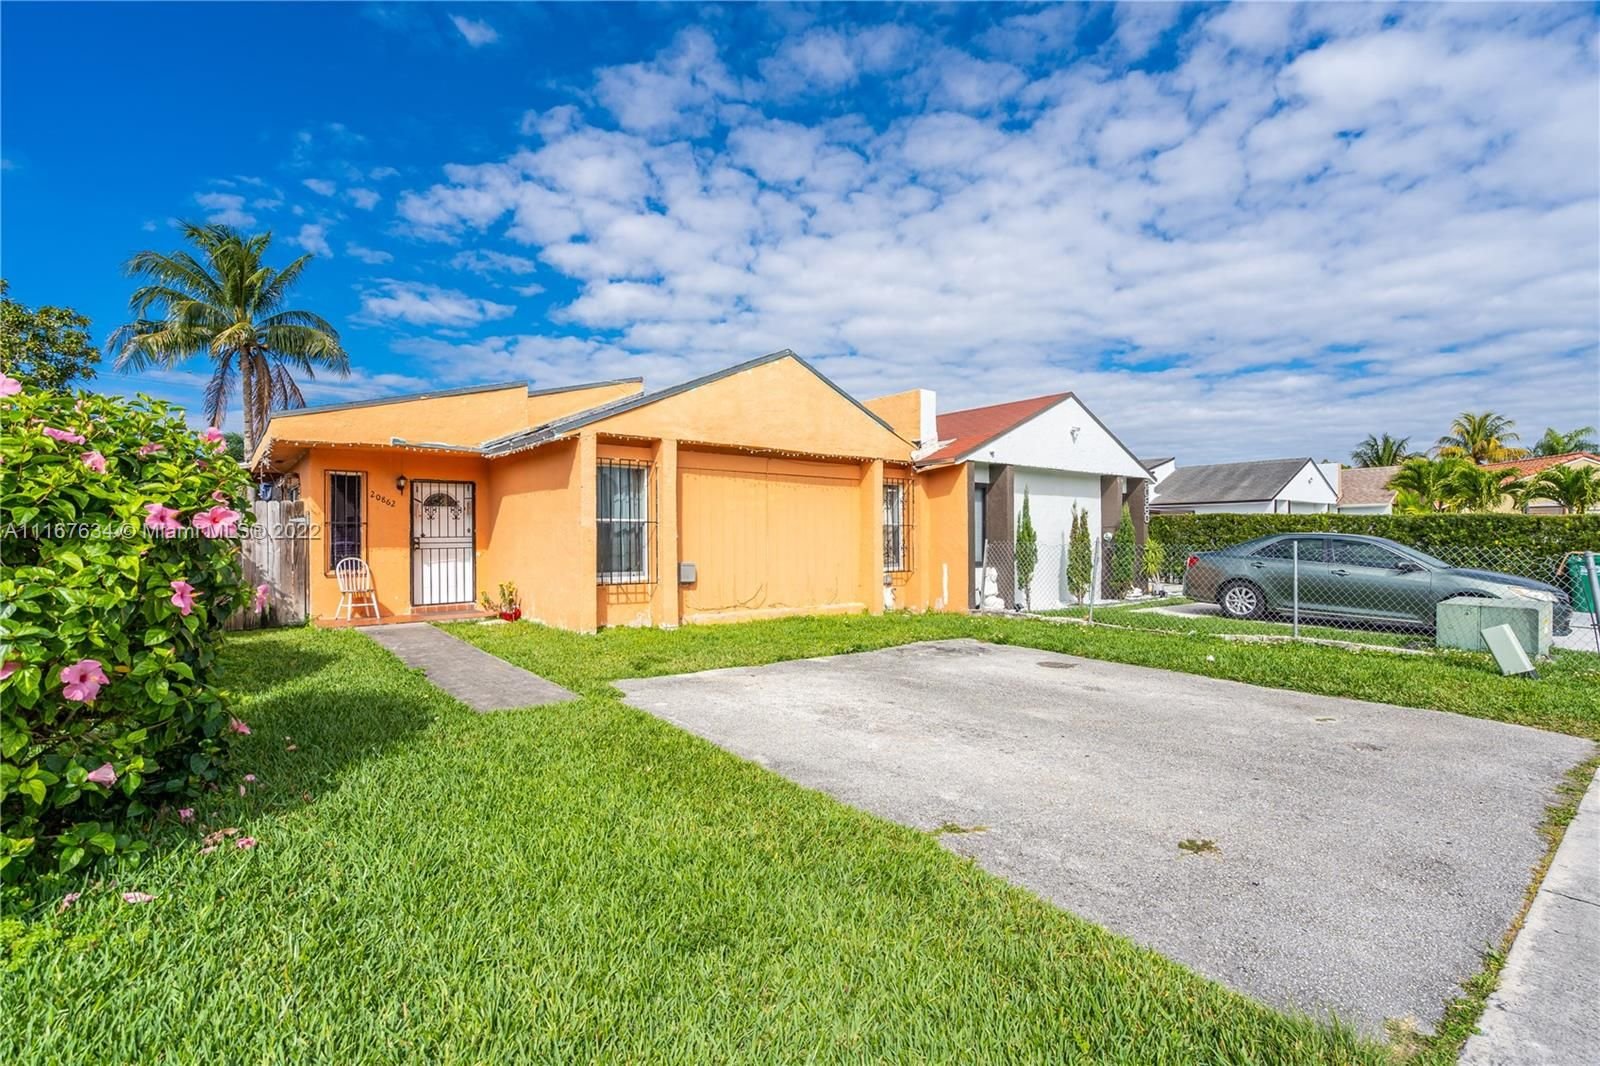 Real estate property located at 20862 121 Avenue #0, Miami-Dade County, Miami, FL